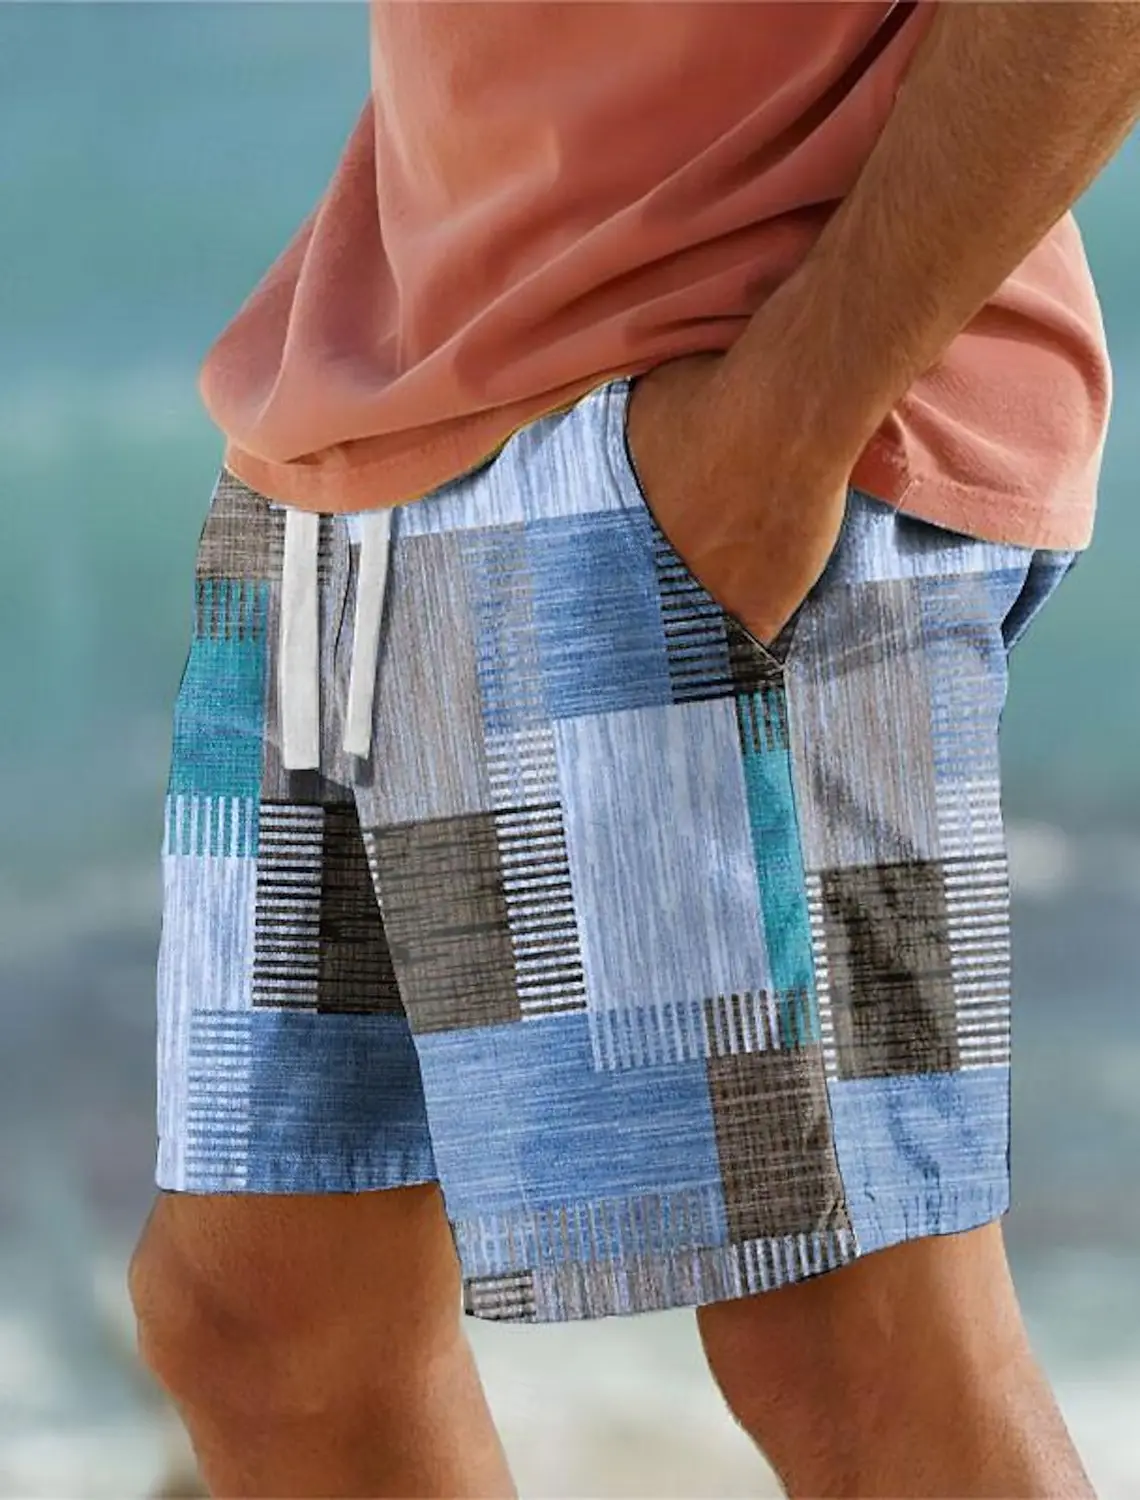 

Шорты мужские клетчатые с 3D-принтом, винтажные пляжные плавки для плавания в клетку, с эластичным шнурком, для отдыха, пляжа, В гавайском стиле